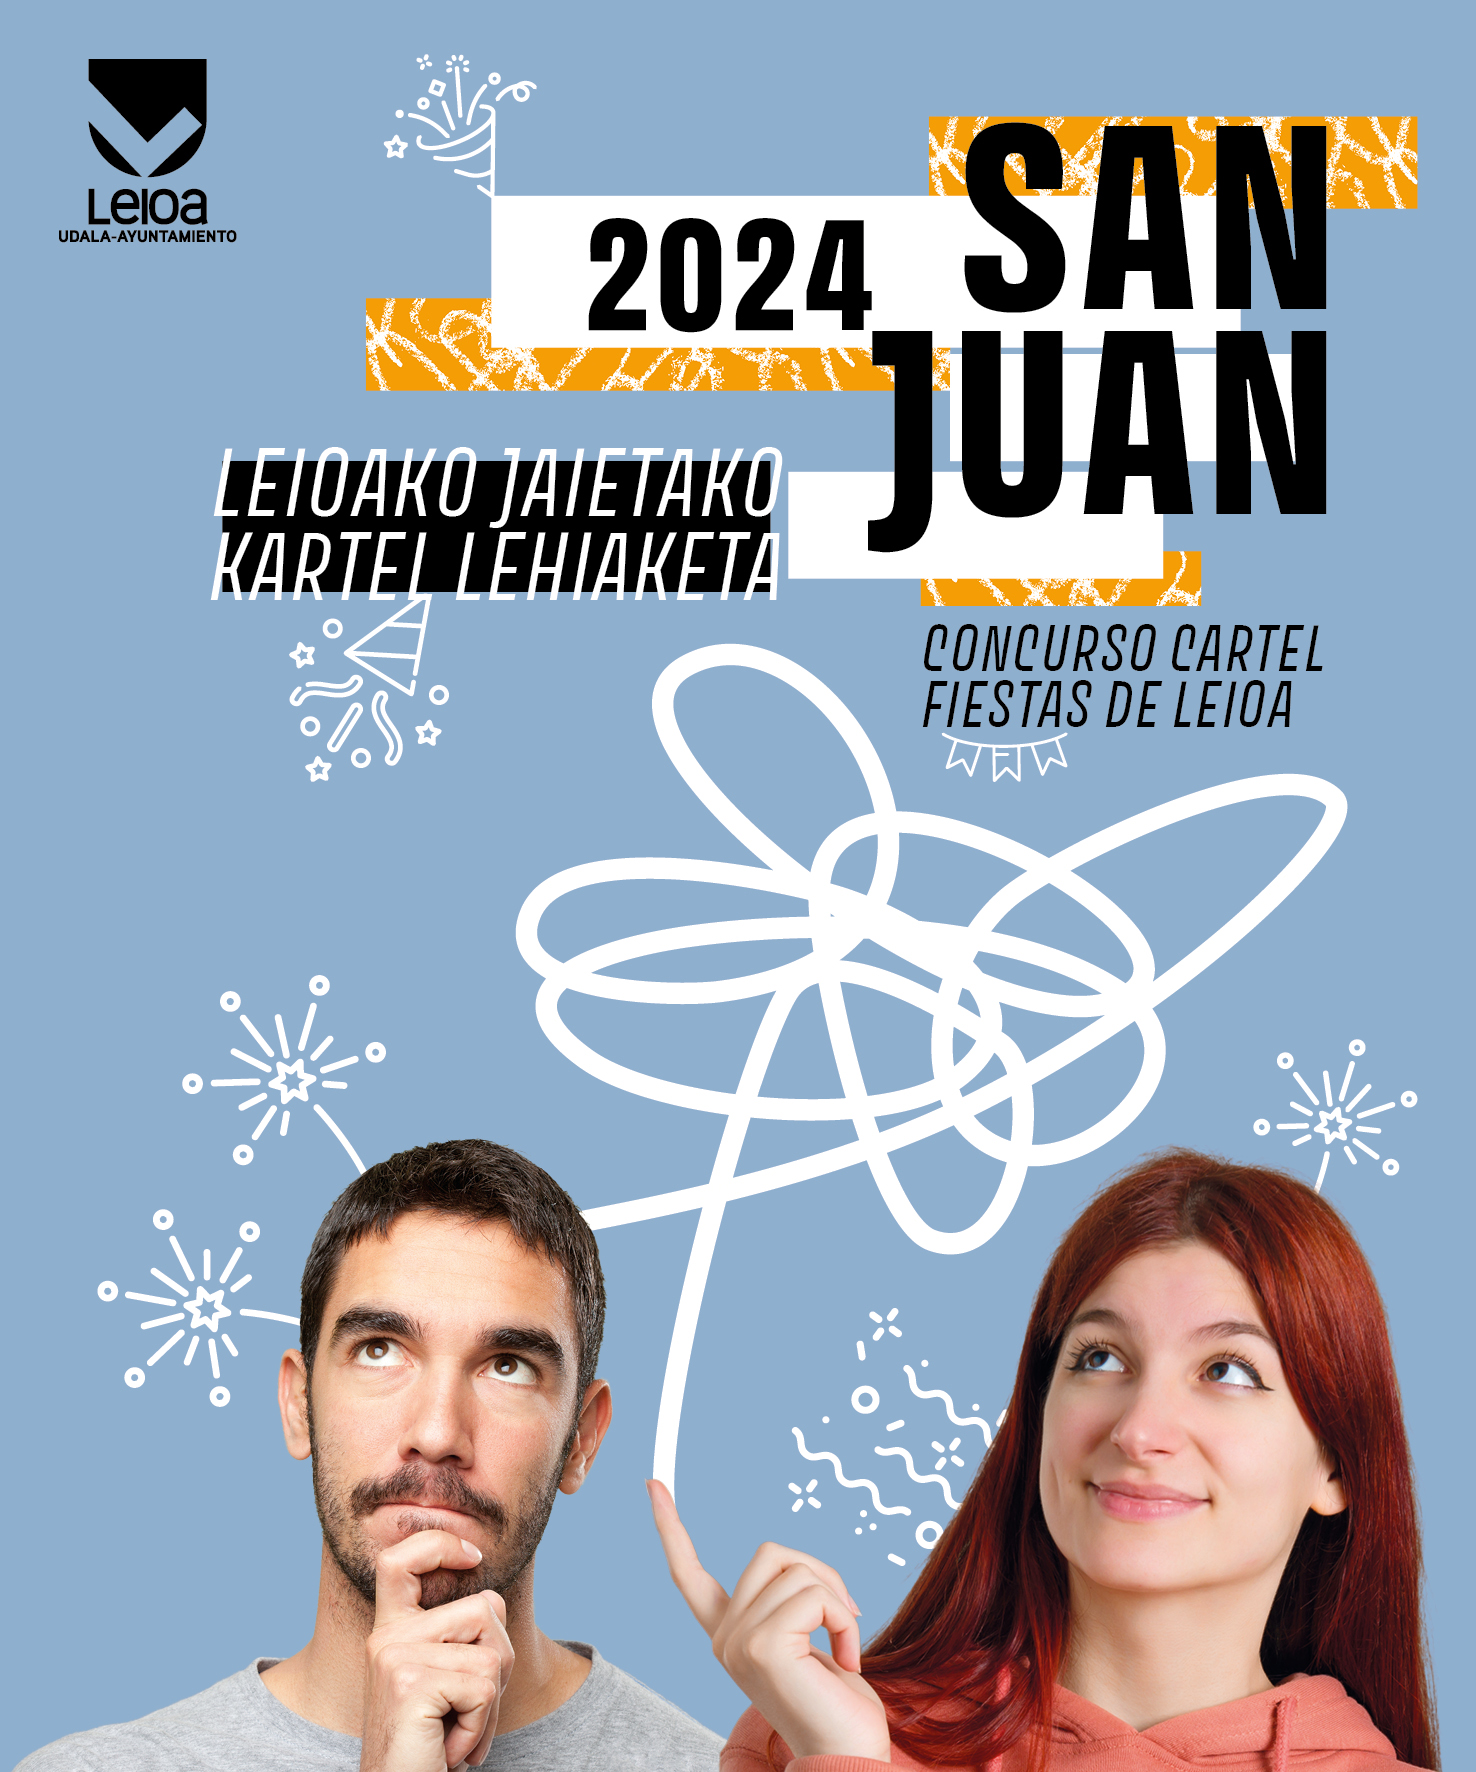 San Juan 2024 kartelen lehiaketa